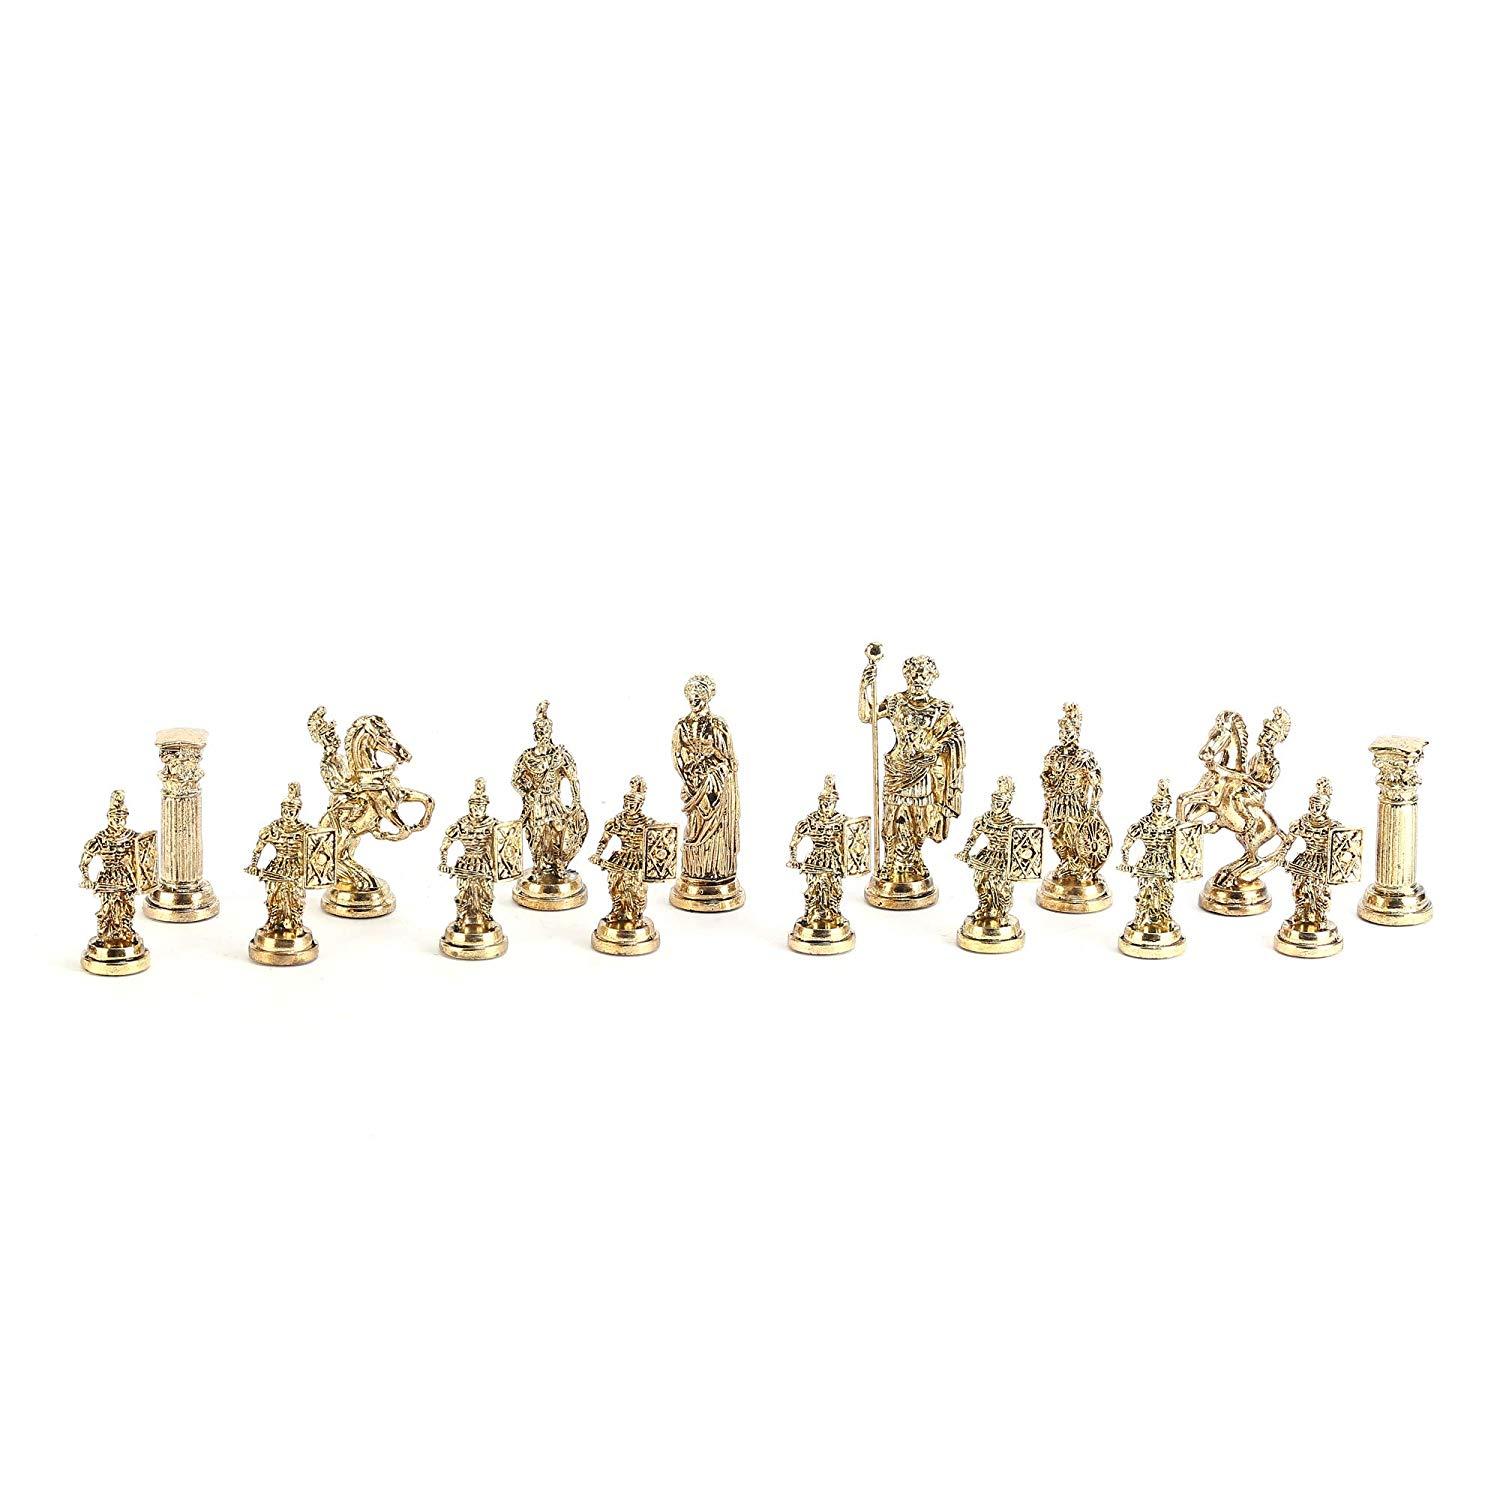 Изображение товара: Набор шахматных фигурок в римском стиле, набор шахматных фигурок ручной работы, деревянная шахматная доска из натурального массива с оригинальной жемчужиной, около 10 см